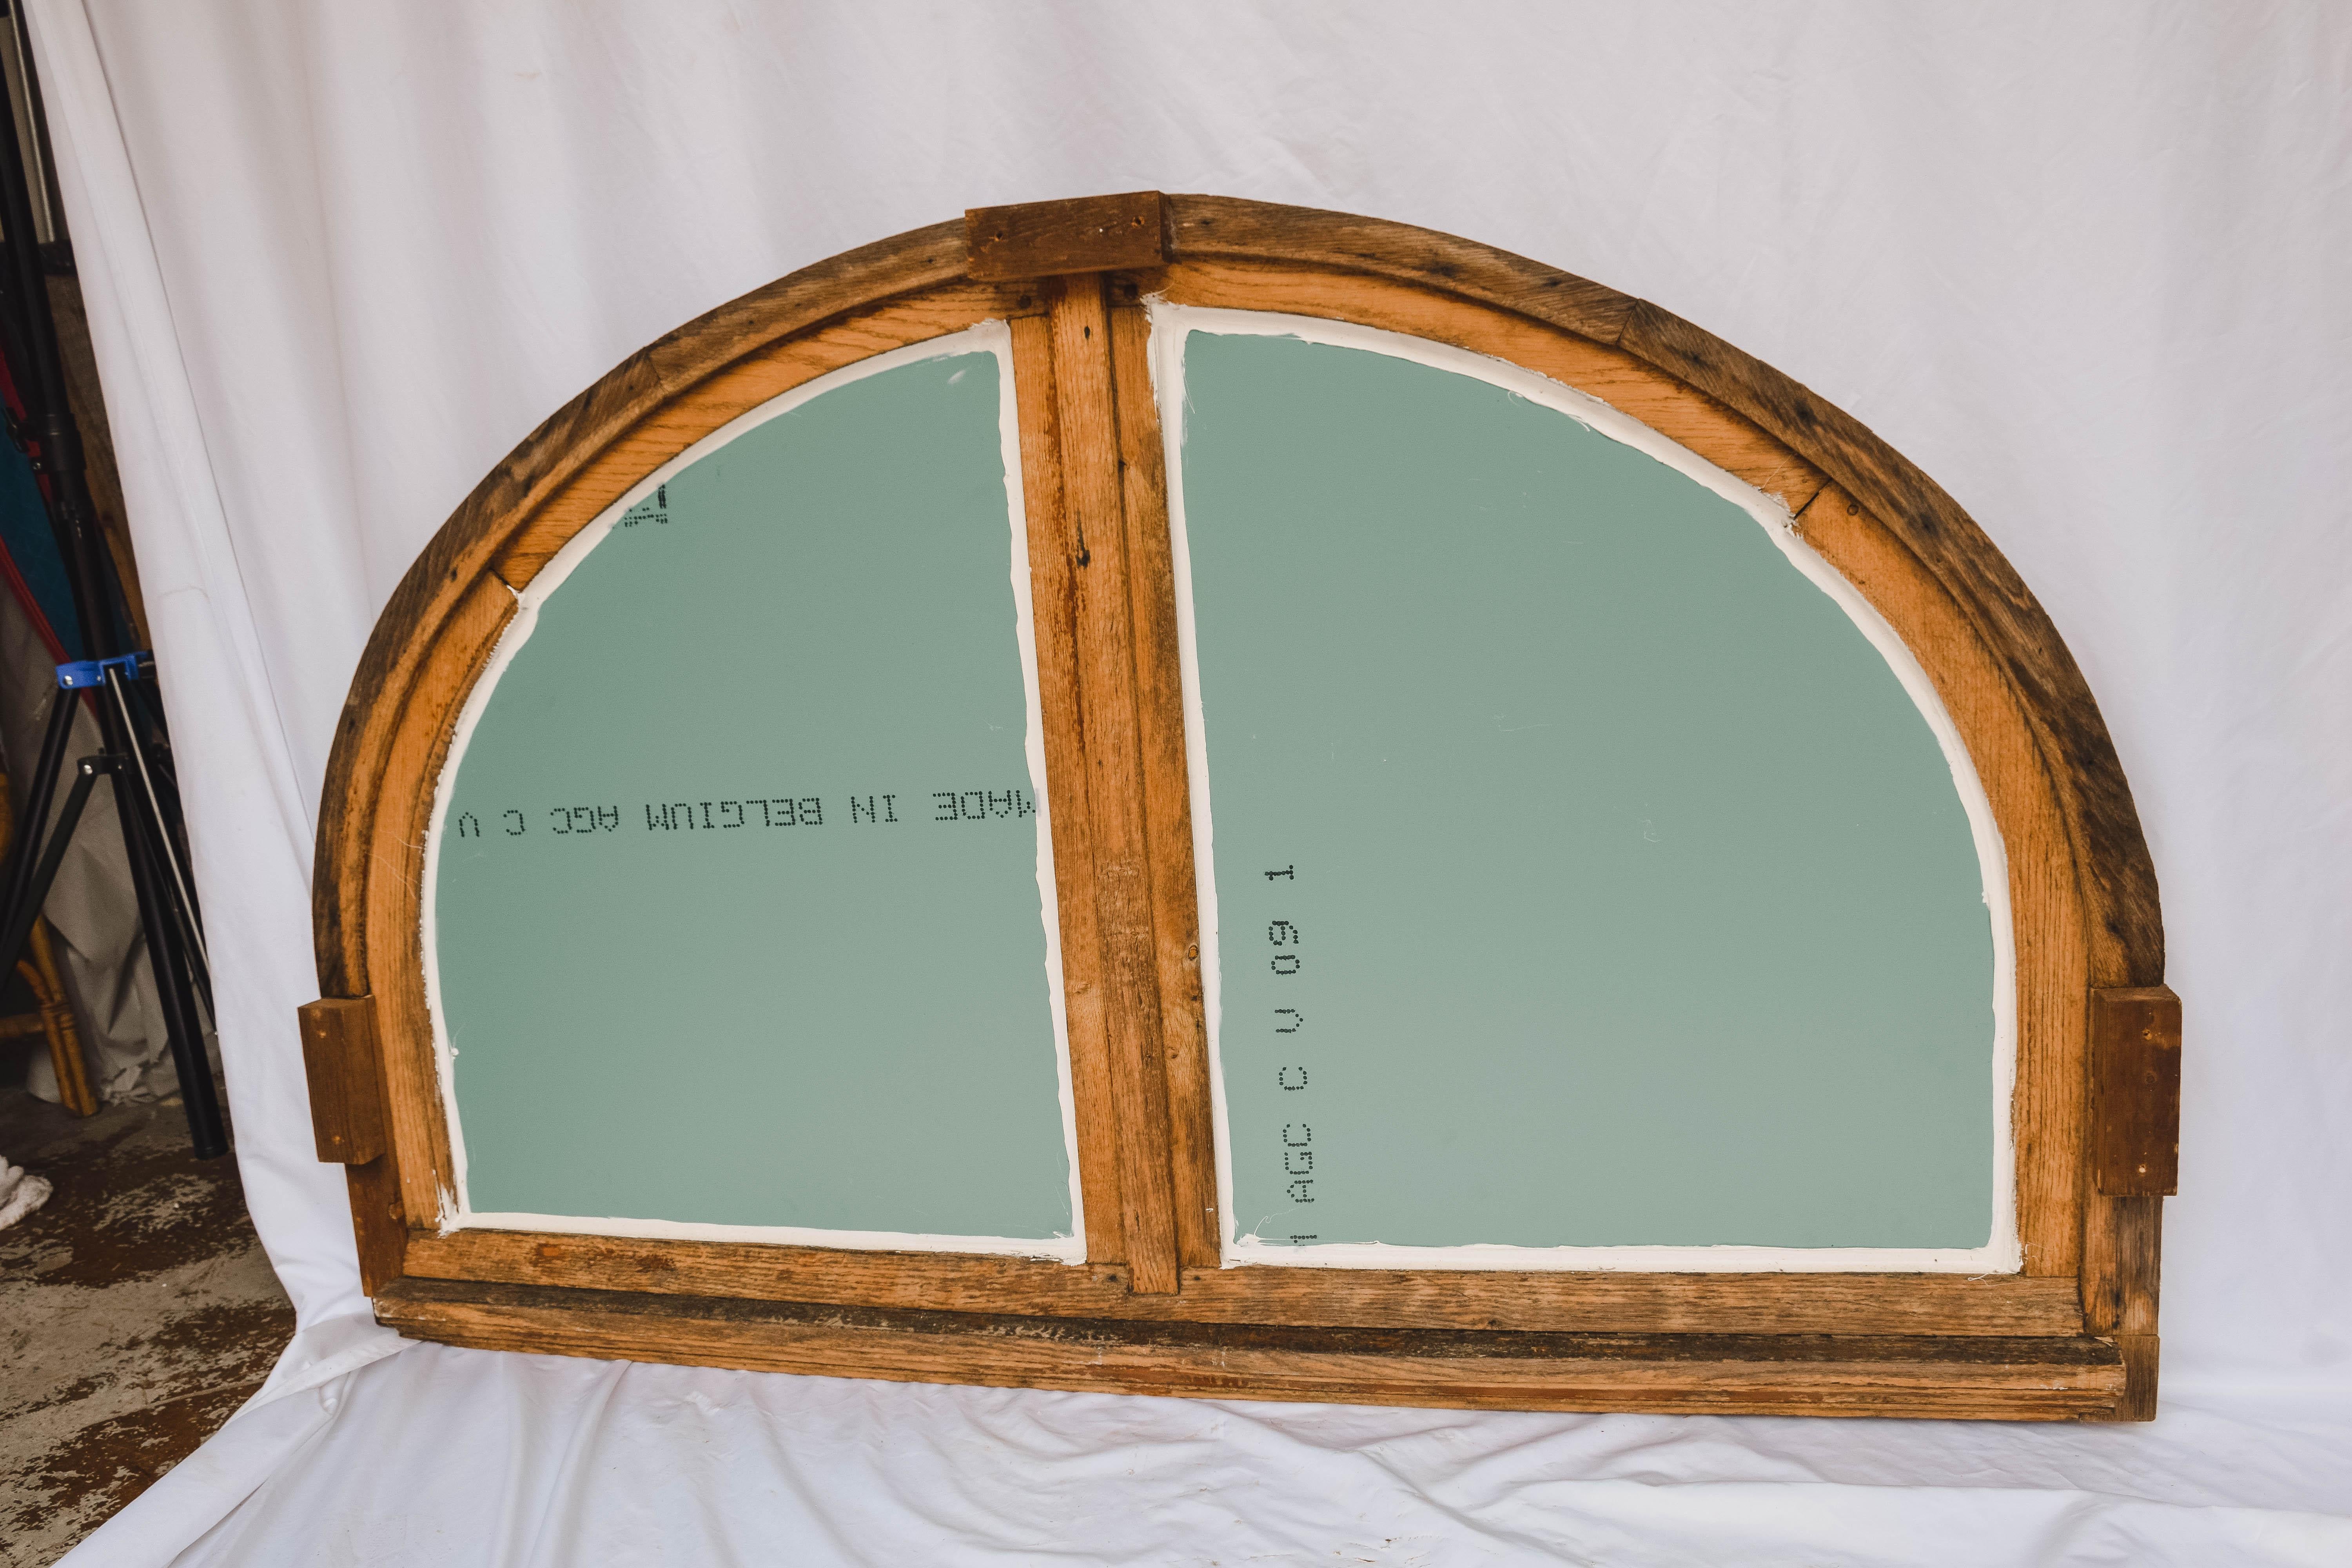 Trouvé en France, ce grand battant de fenêtre demi-rond en bois peint a été transformé en miroir. Cette magnifique fenêtre/miroir ancienne en demi-lune présente un battant en bois peint divisé en deux moitiés. Cette pièce a conservé une grande